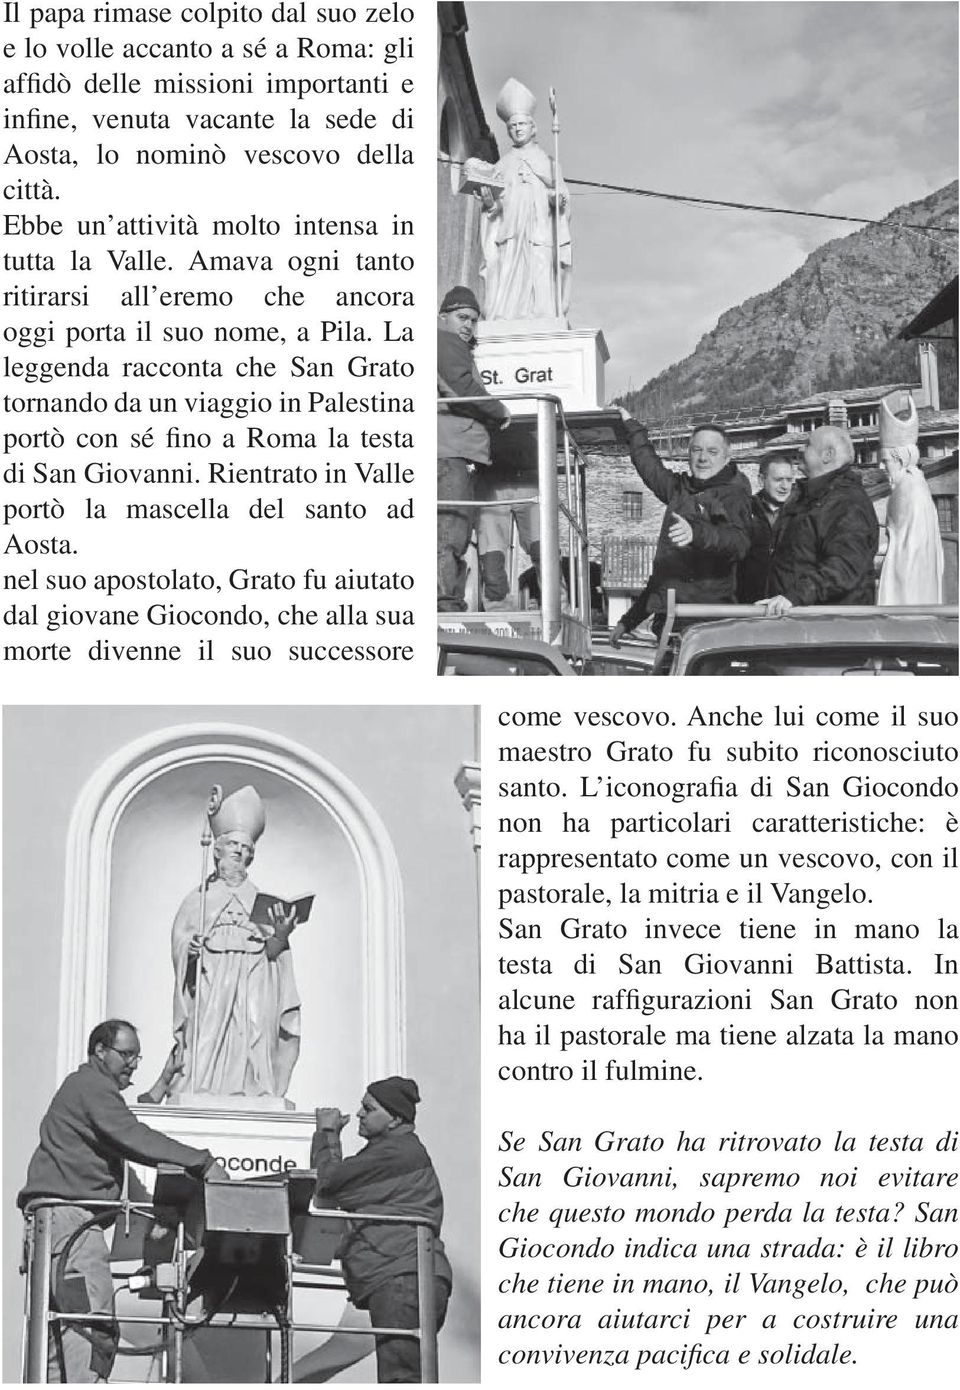 La leggenda racconta che San Grato tornando da un viaggio in Palestina portò con sé fino a Roma la testa di San Giovanni. Rientrato in Valle portò la mascella del santo ad Aosta.